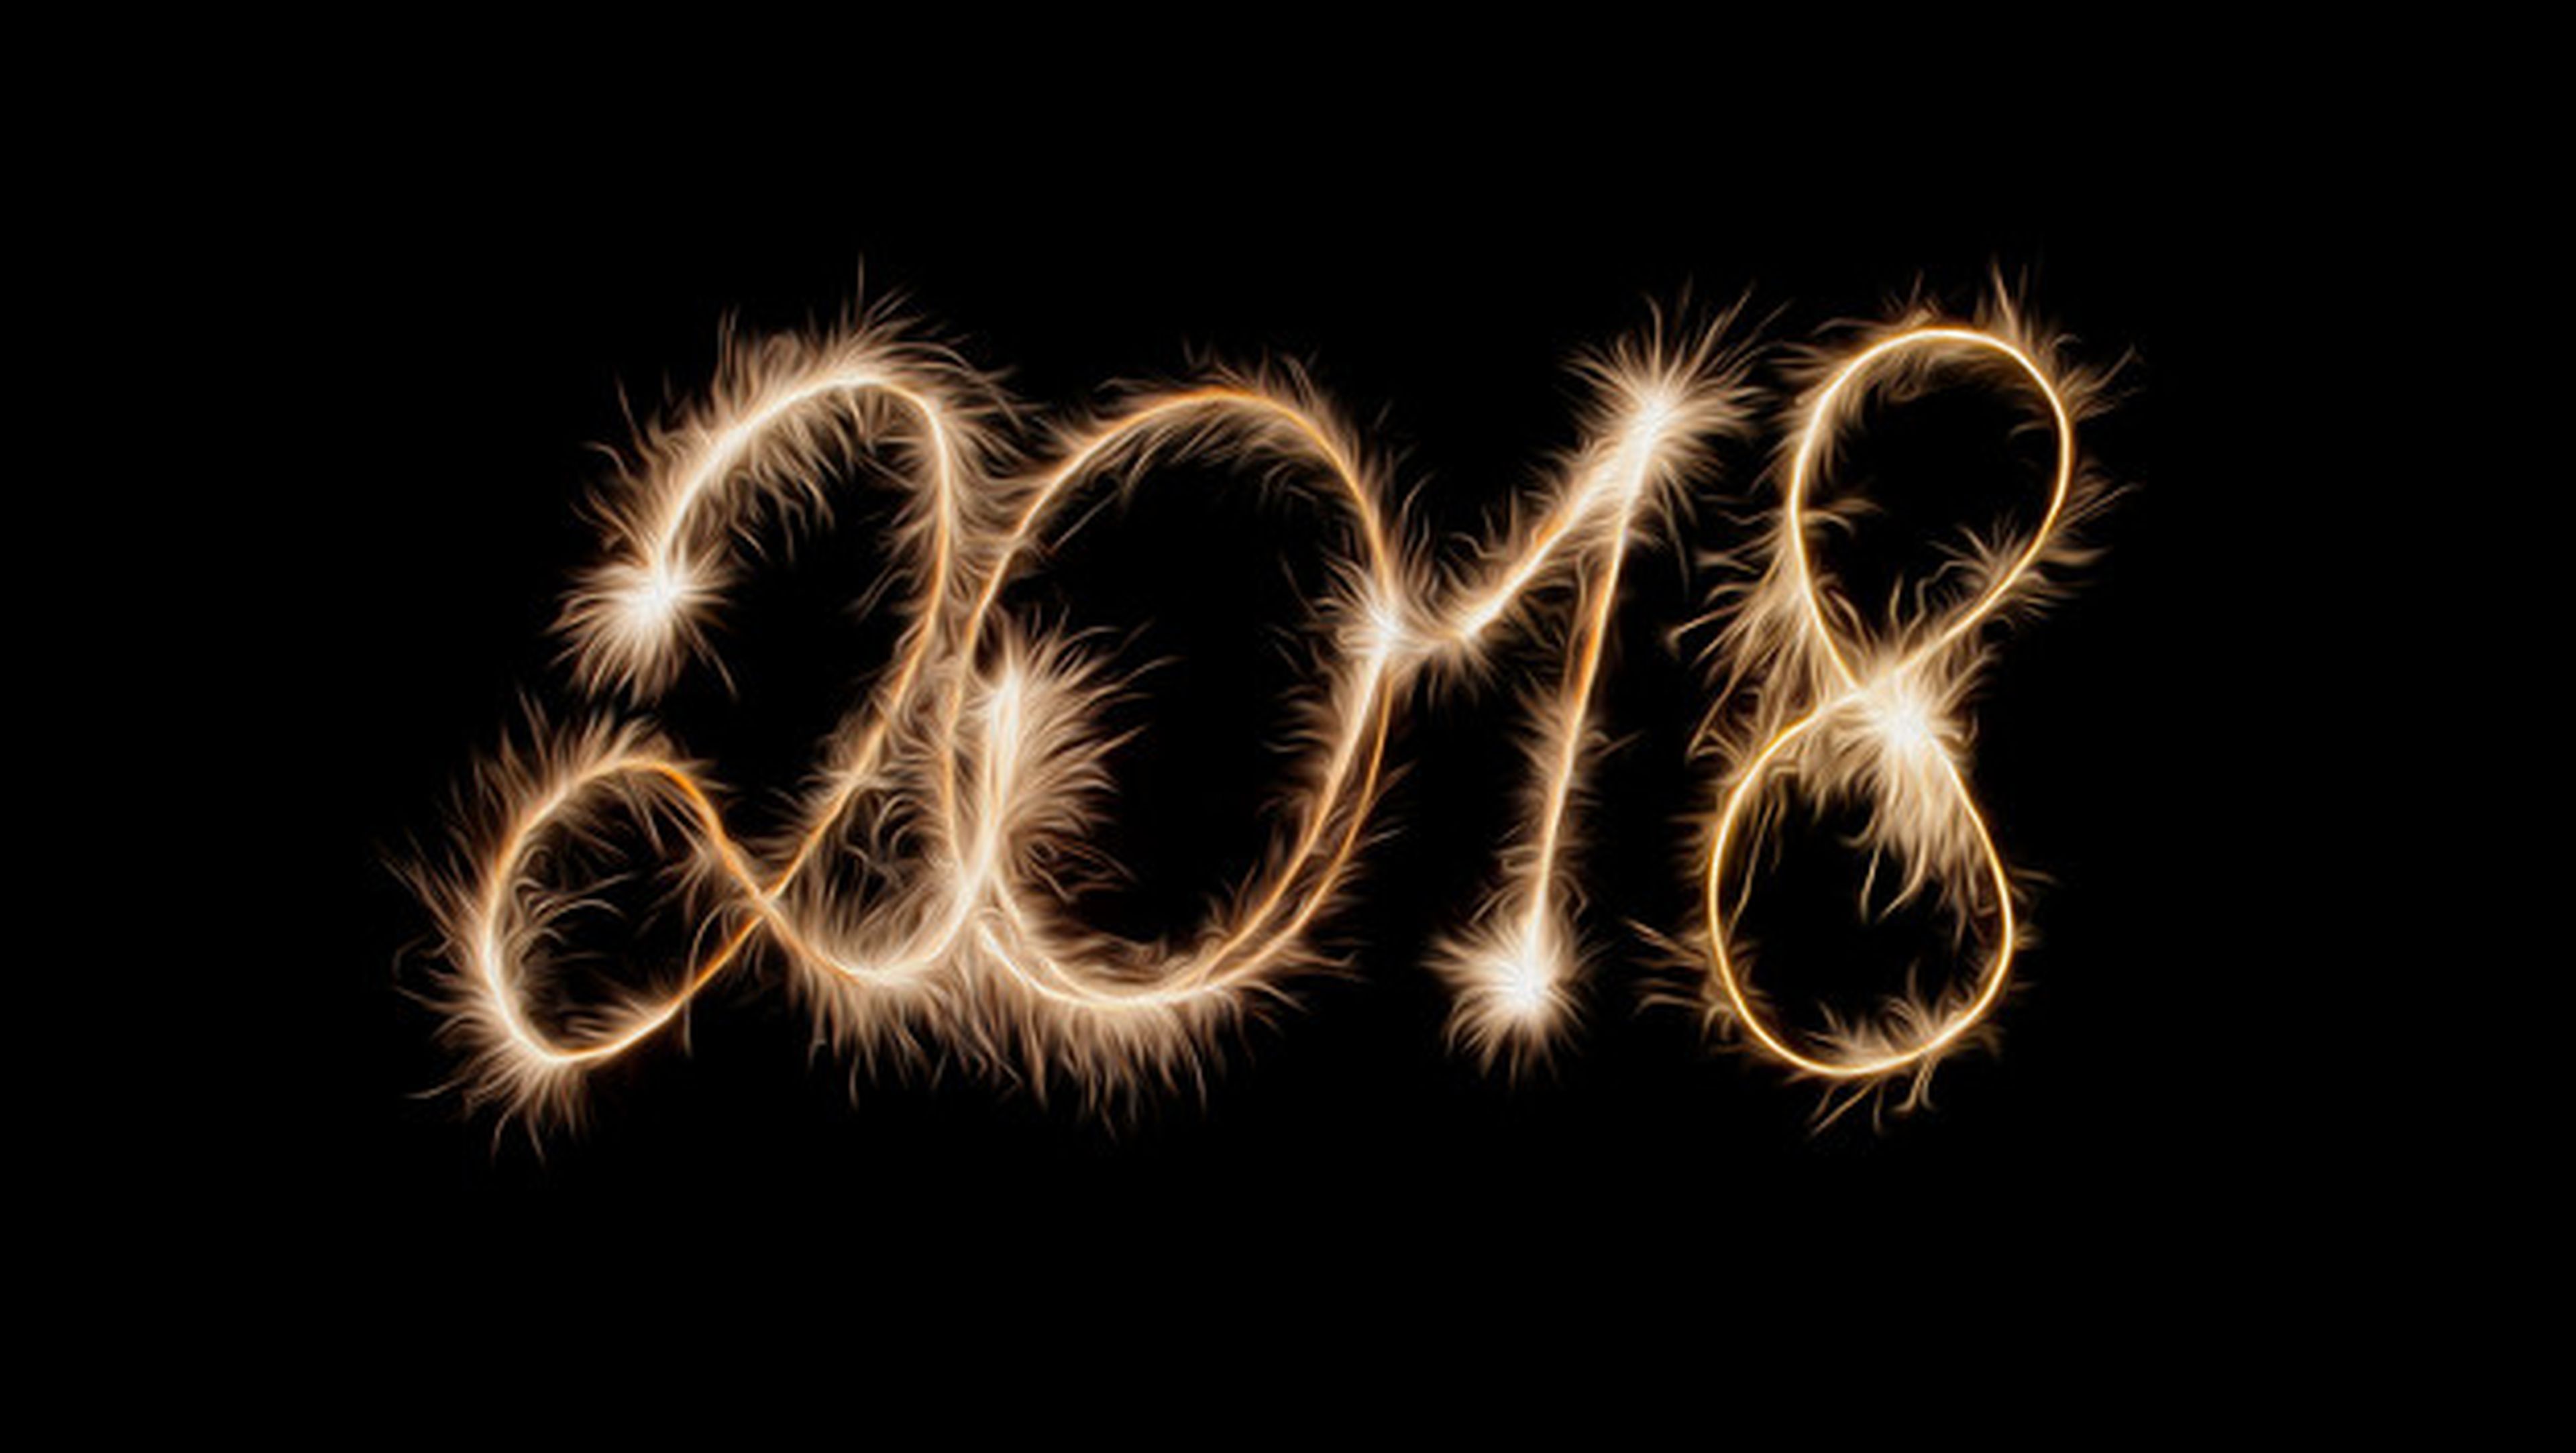 Mejores imágenes con frases para felicitar Fin de Año y Año Nuevo 2018.